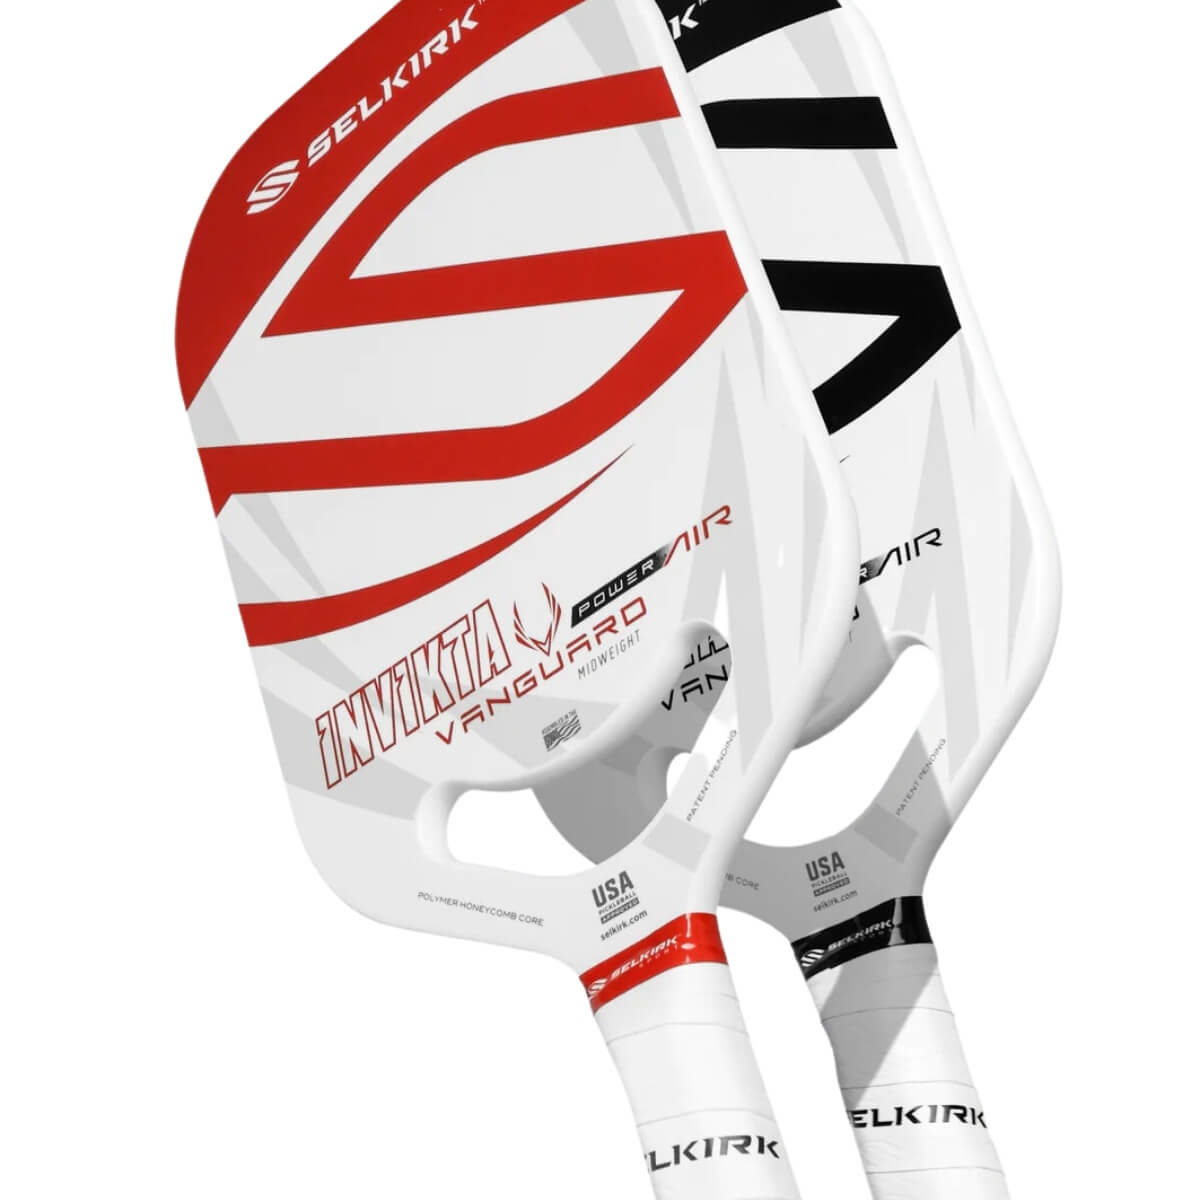 Selkirk Vanguard Power Air Invikta paddle / racket Red & Black